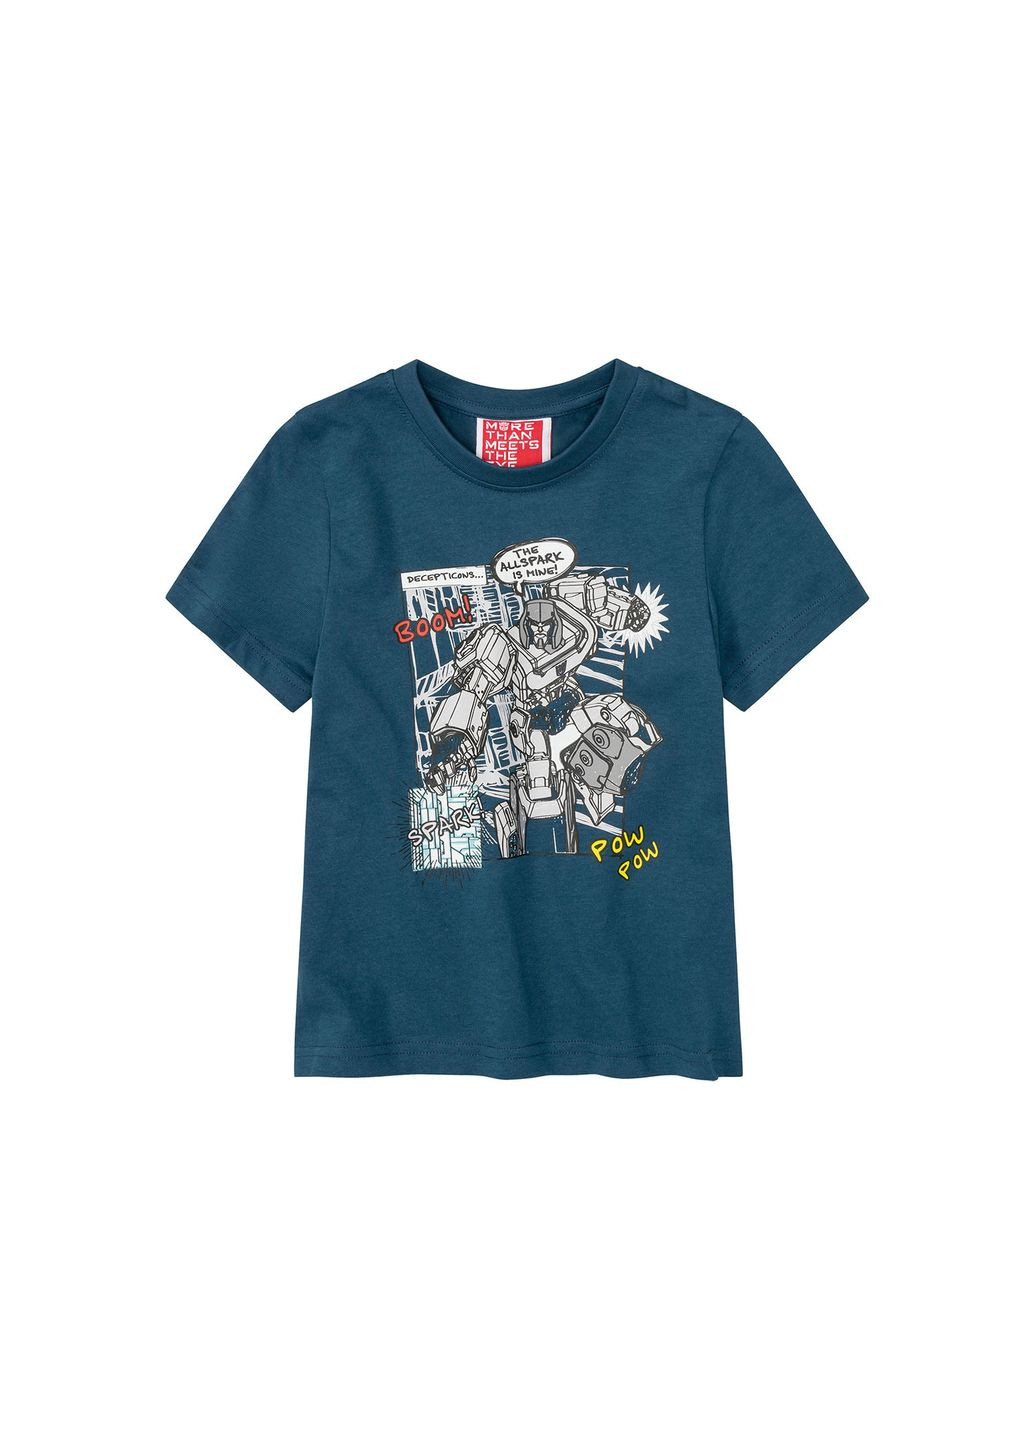 Бірюзова демісезонна футболка бавовняна з принтом для хлопчика трансформер / transformers 381964 бірюза Disney